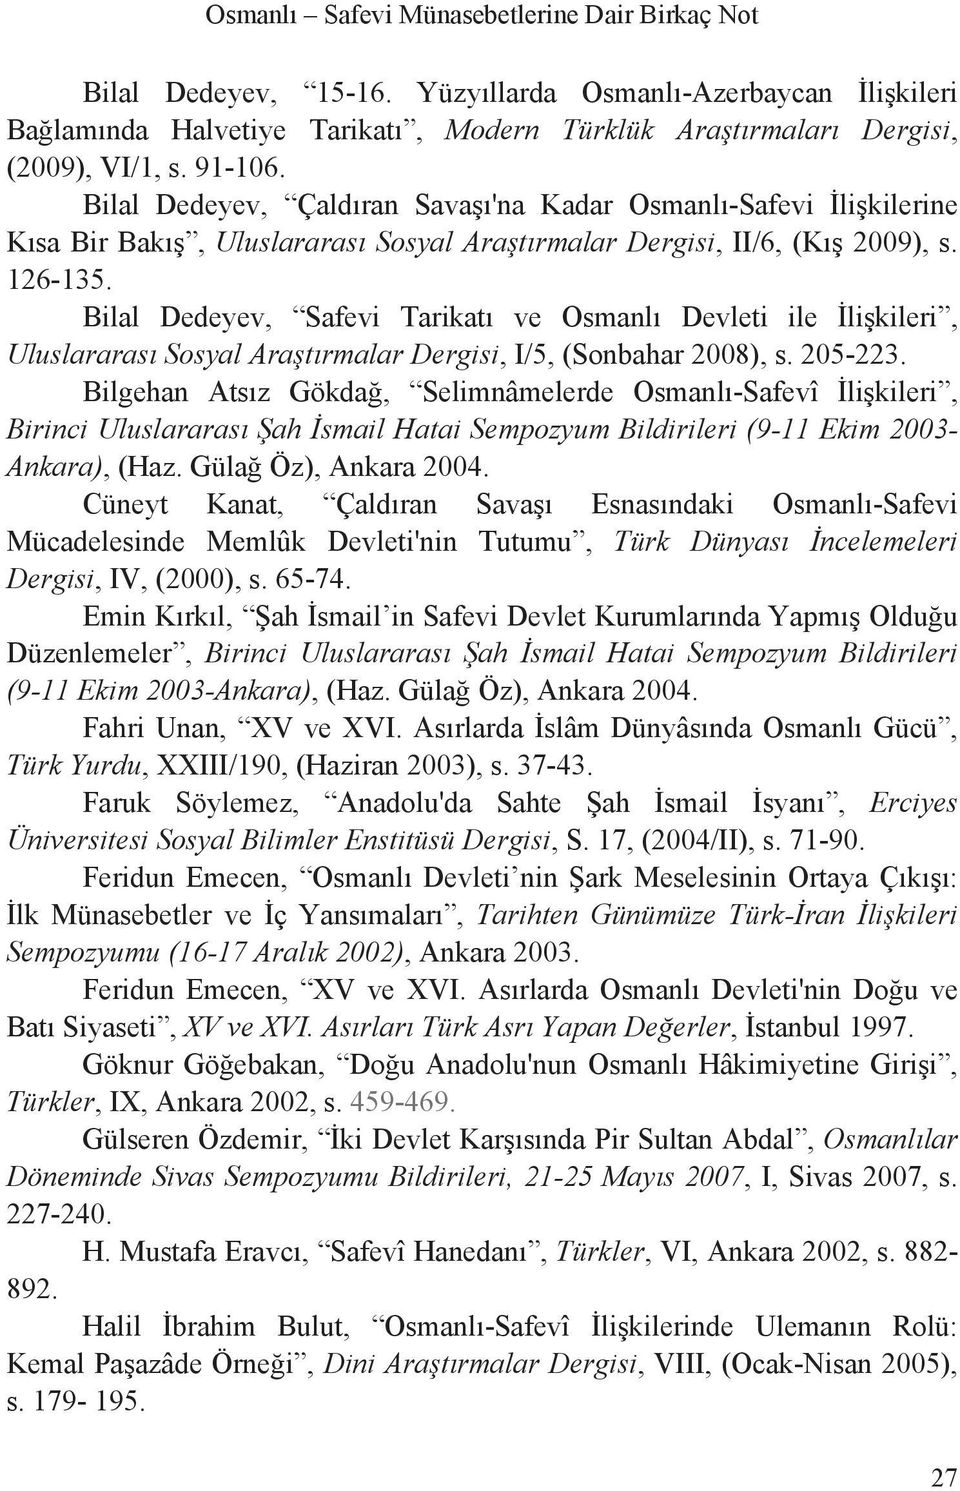 Bilal Dedeyev, Safevi Tarikat ve Osmanl Devleti ile li kileri, Uluslararas Sosyal Ara t rmalar Dergisi, I/5, (Sonbahar 2008), s. 205-223.